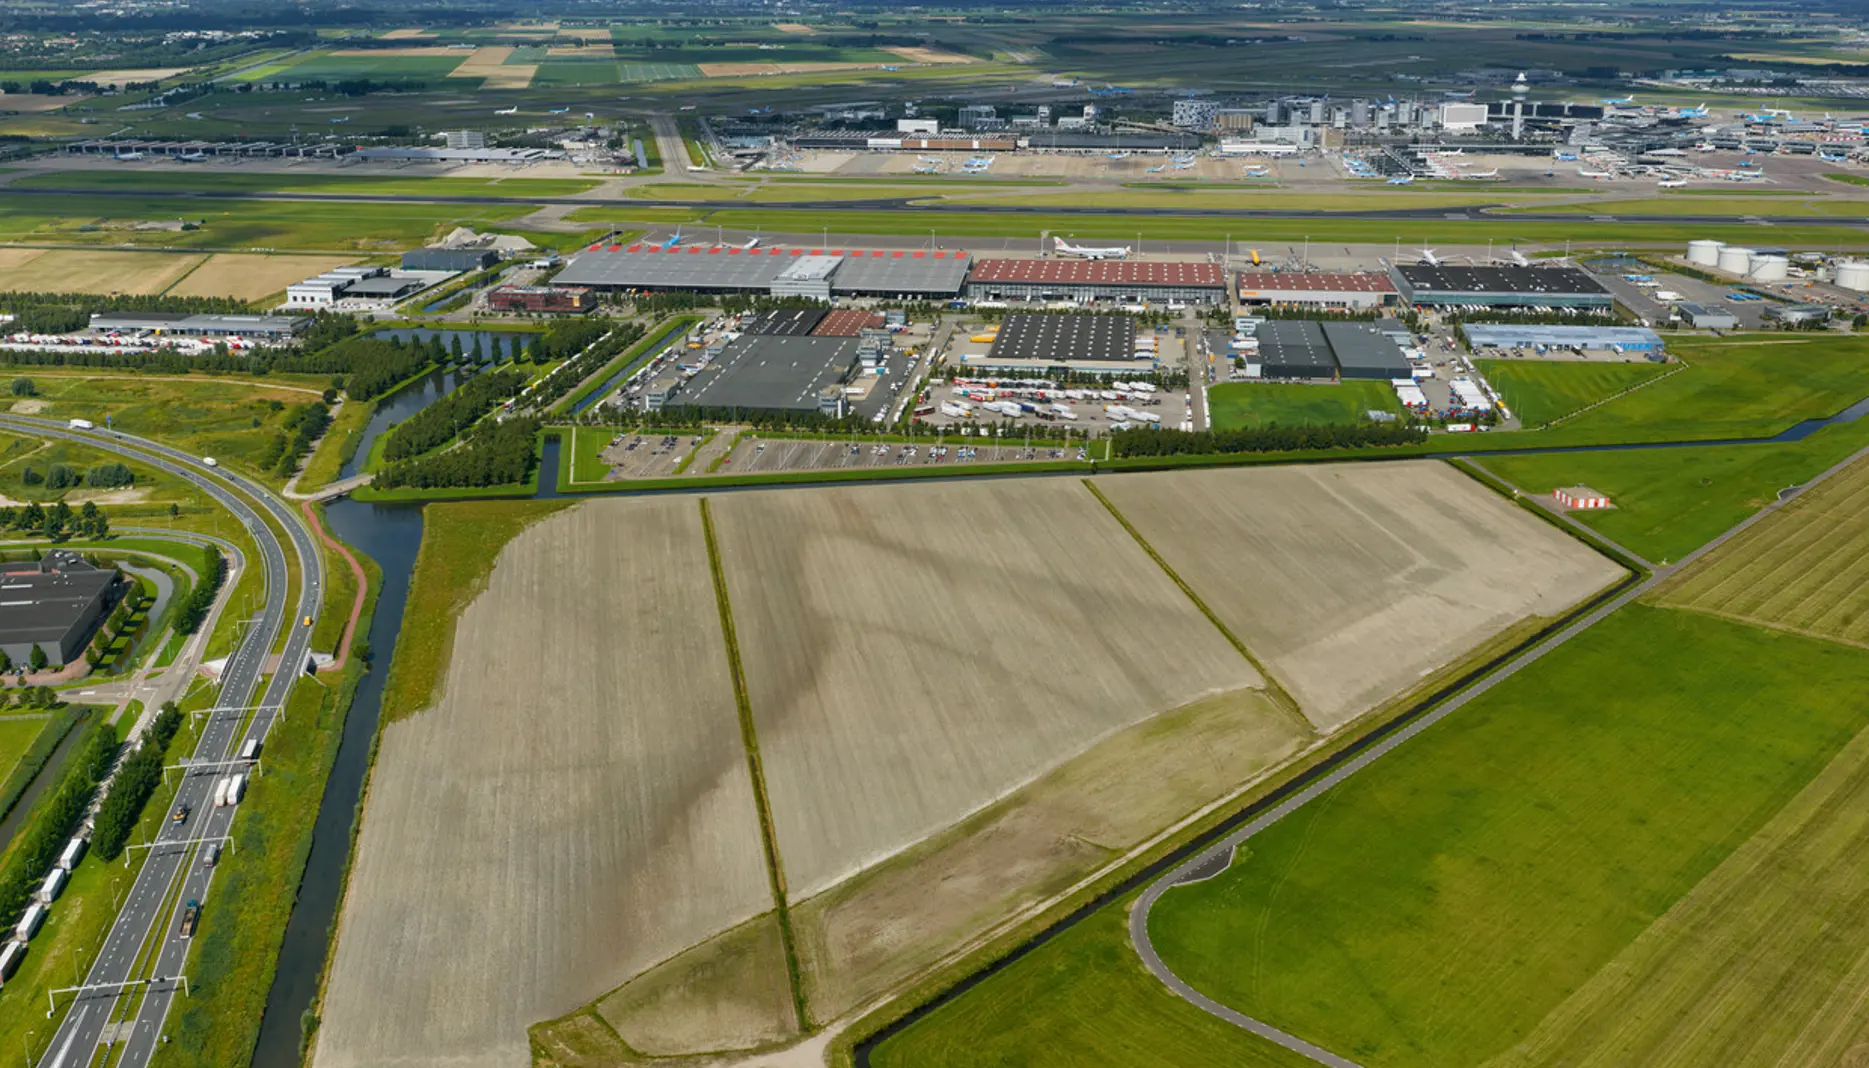  LVNL begeleidt vliegverkeer Dutch Grand Prix met speciale routes 